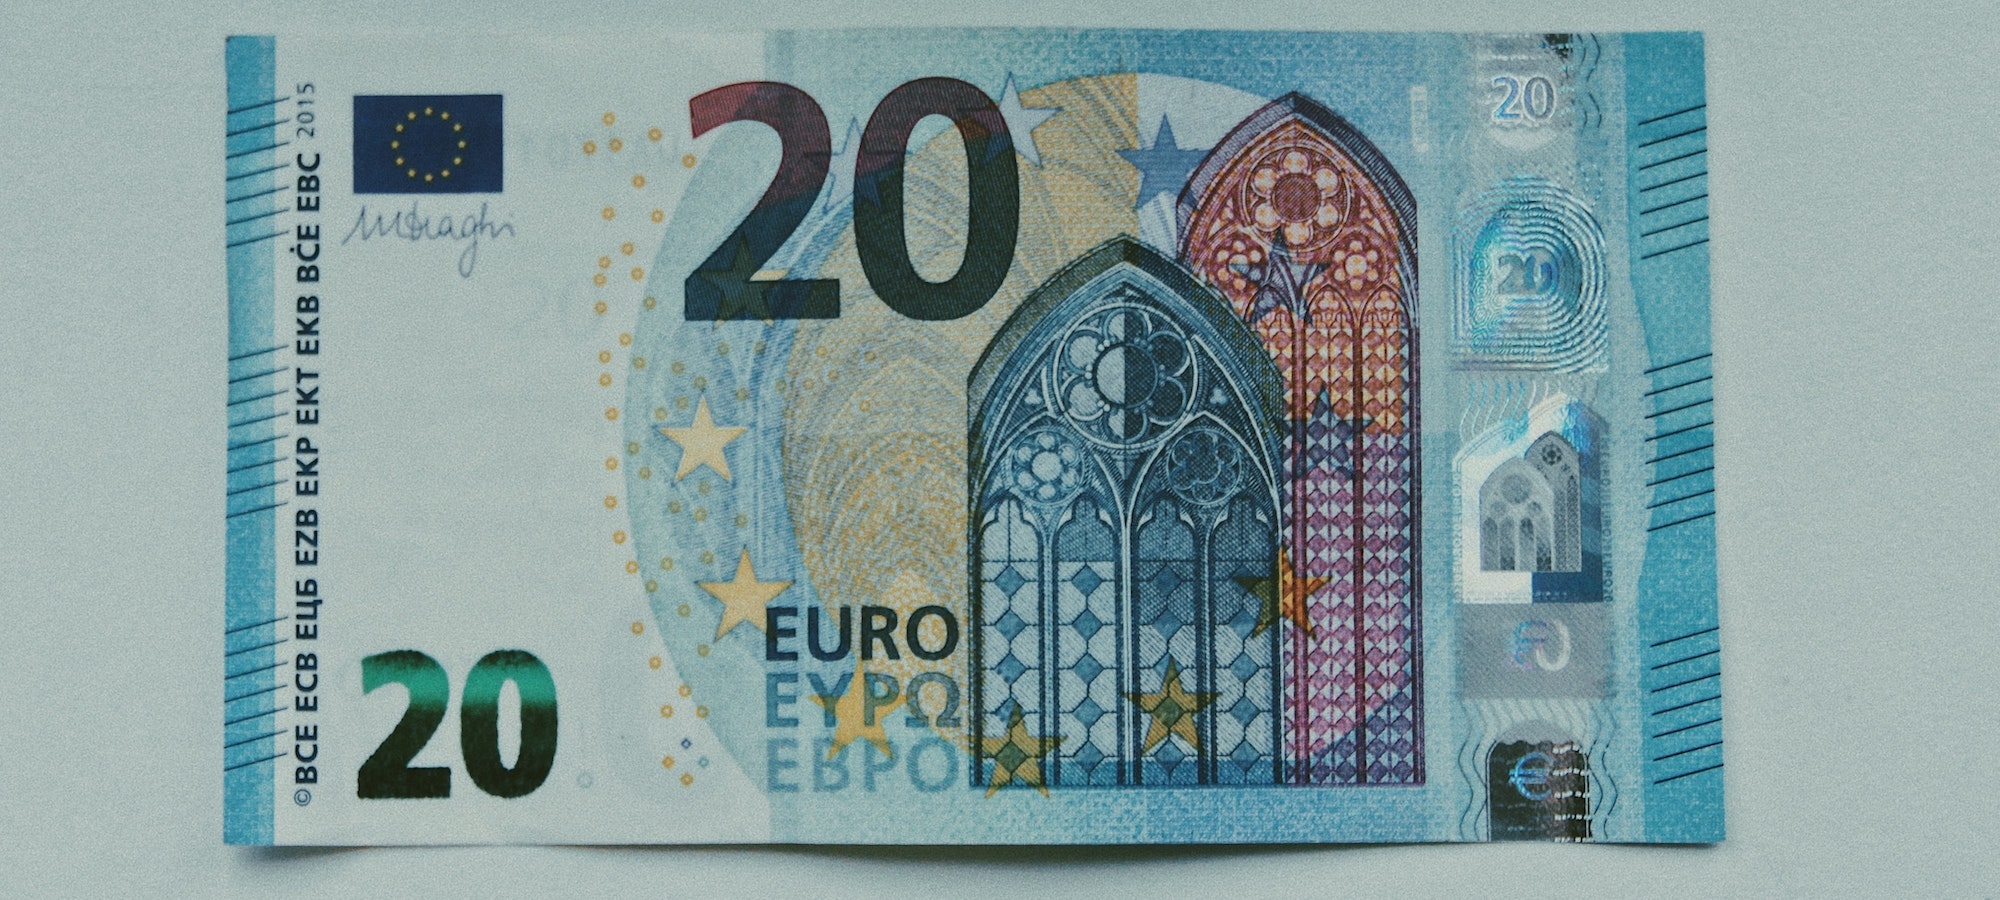 Gótikus stílusjegyek a 20 euróson, a túloldalon híd szerepel – Fotó: Lilzidesigns / Unsplash